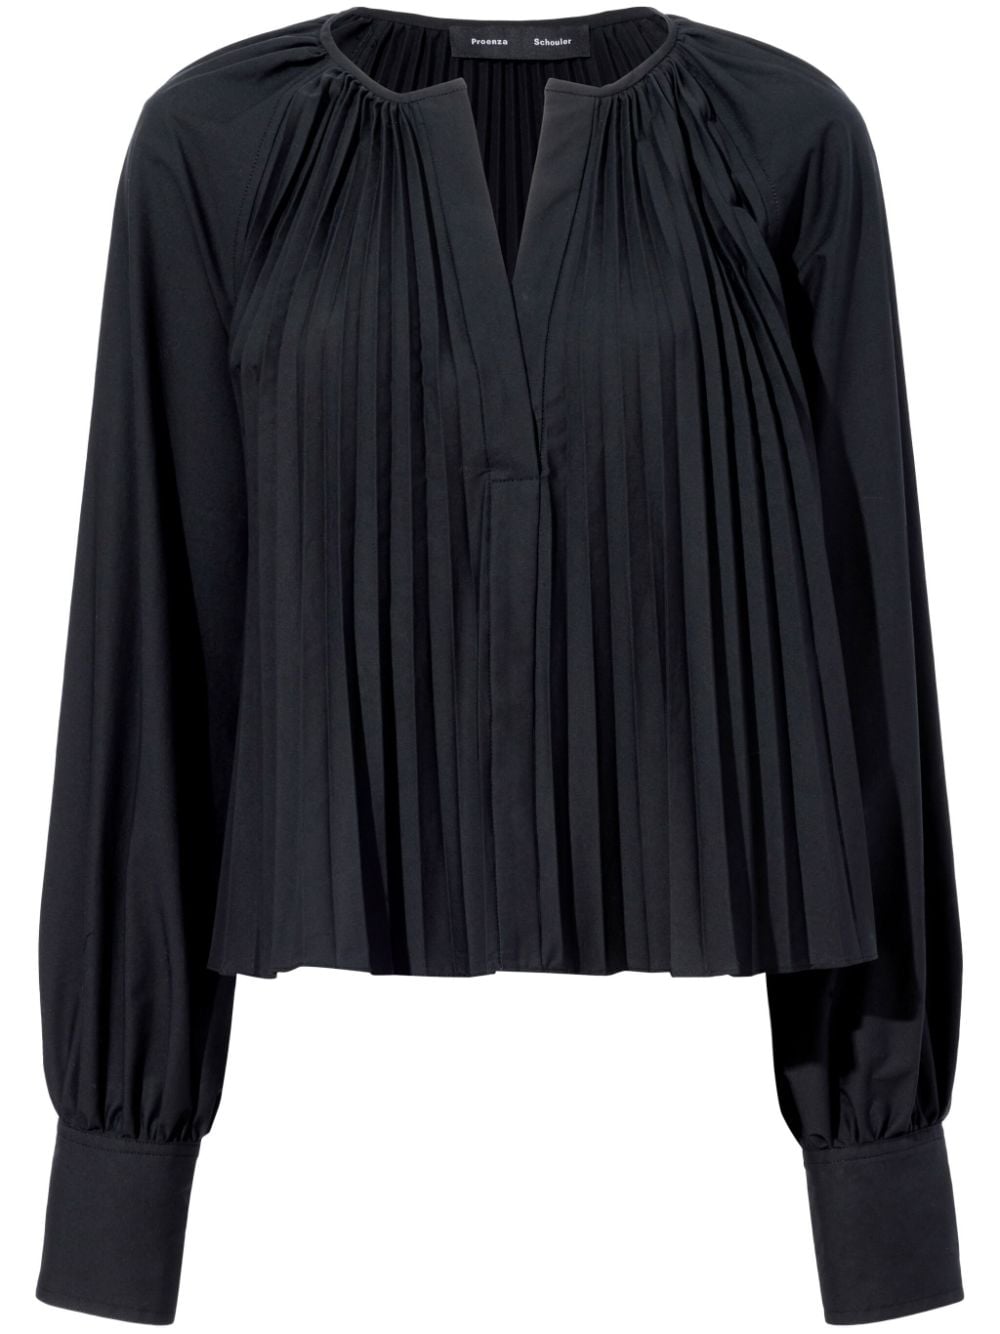 Monica pleat-detailing blouse